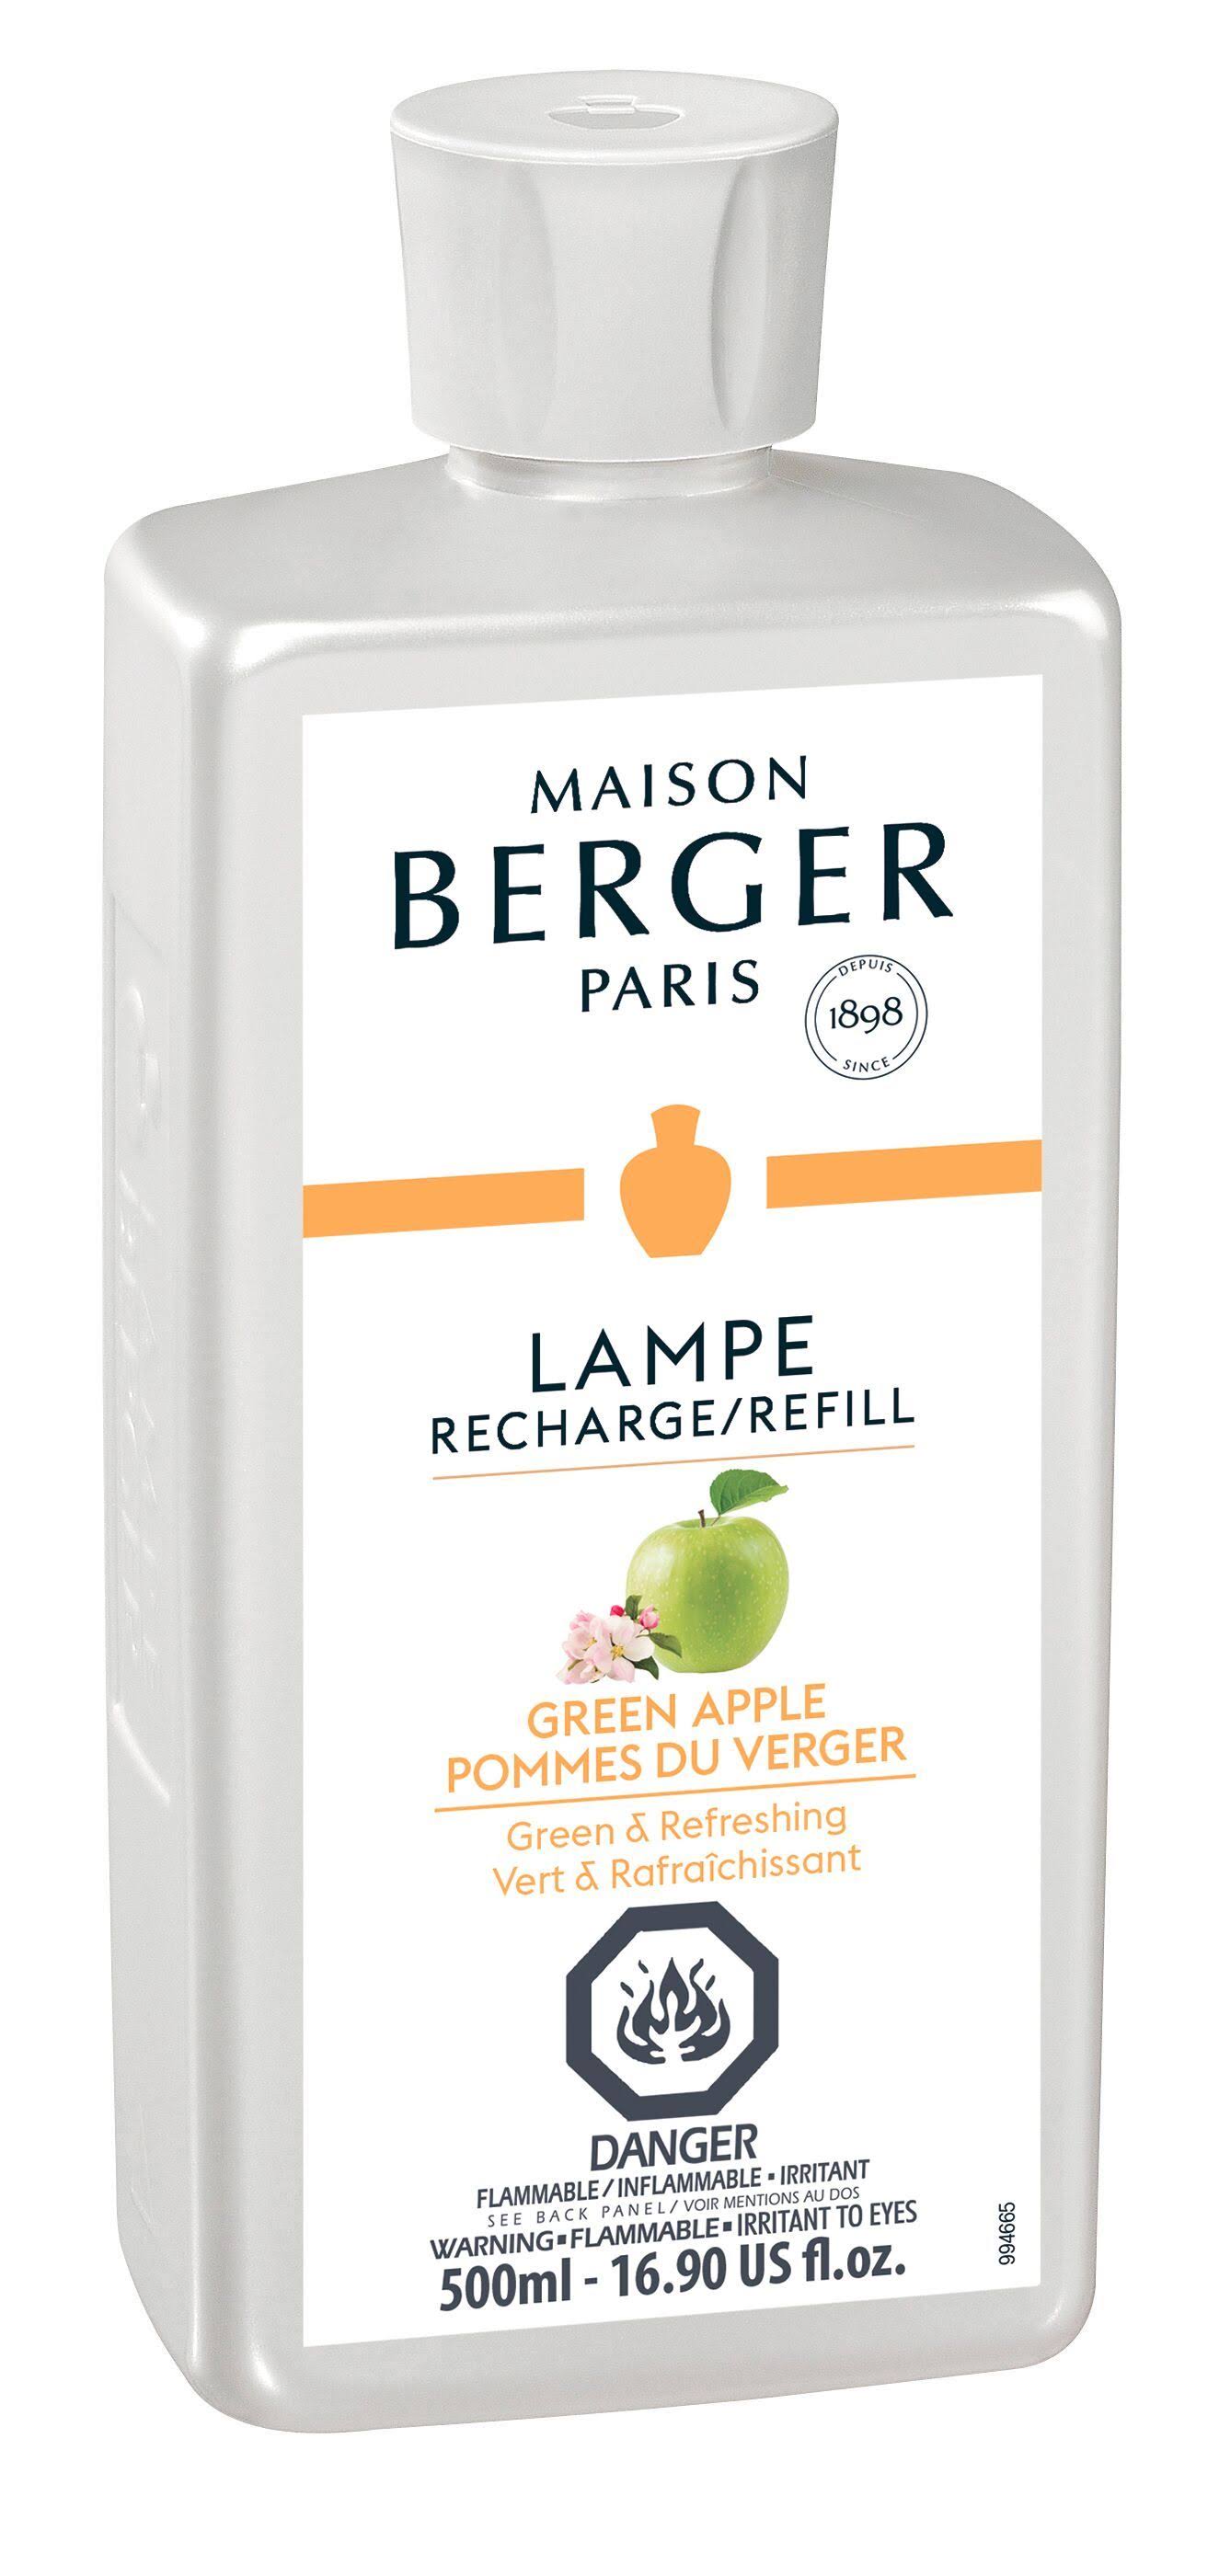 Lampe Berger Home Fragrance Oil - Green Apple